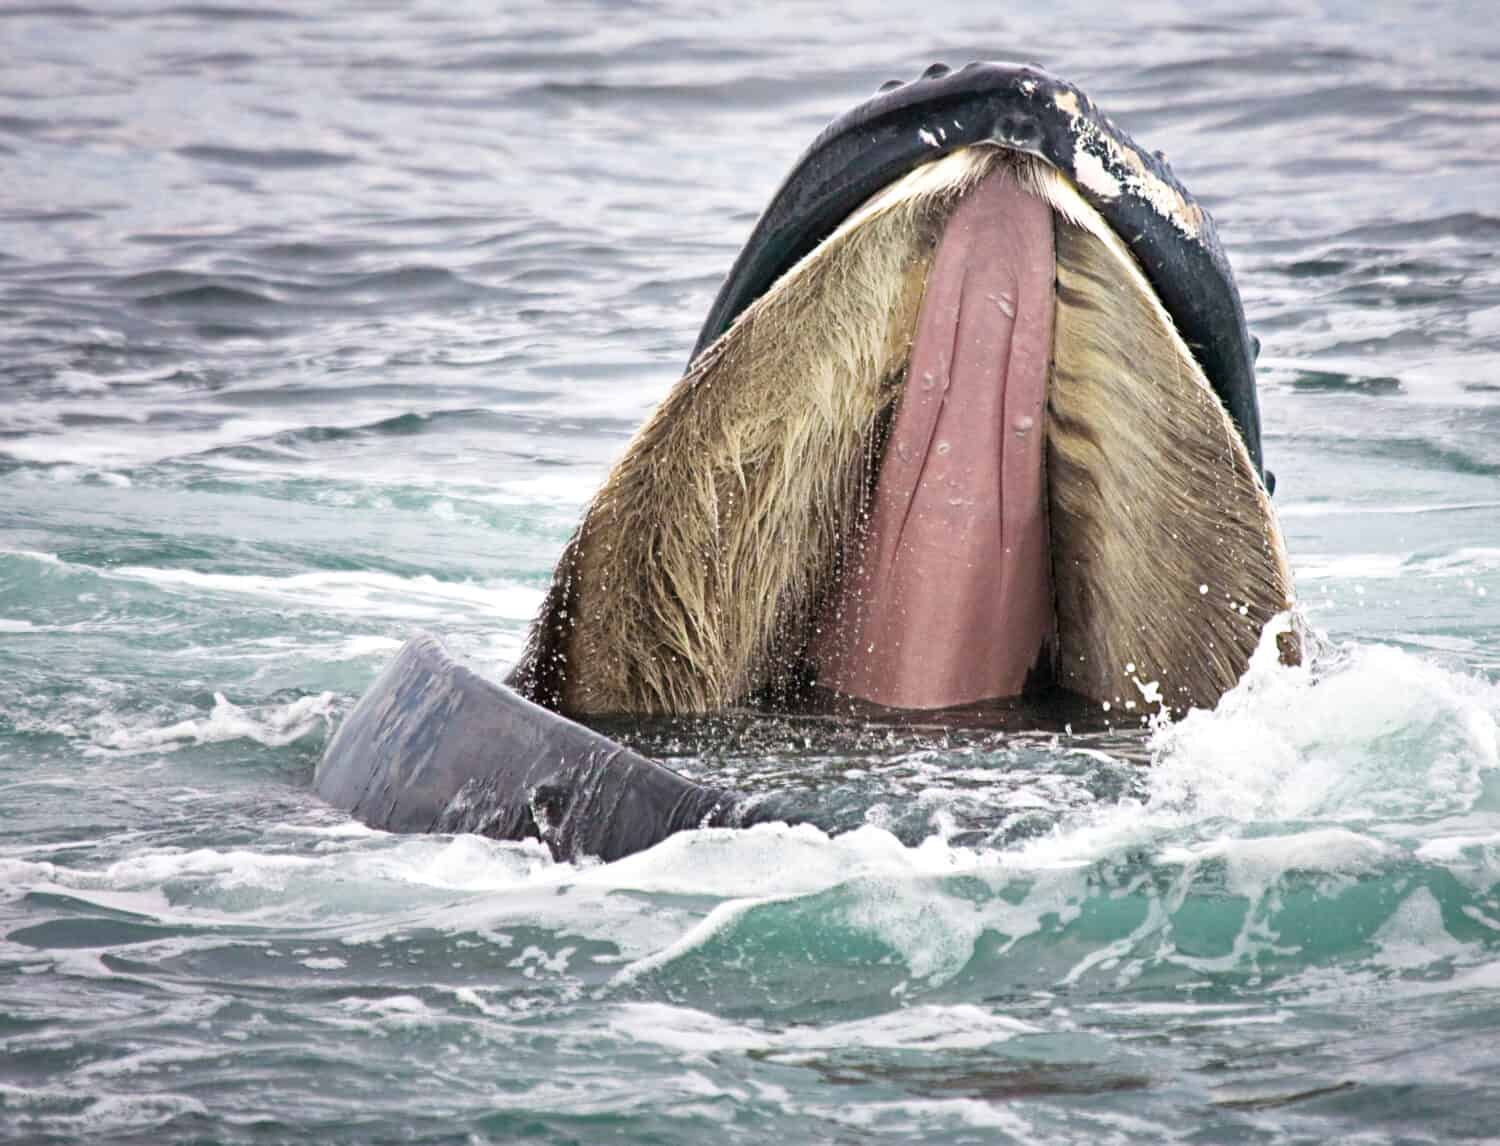 Шерсть у китообразных